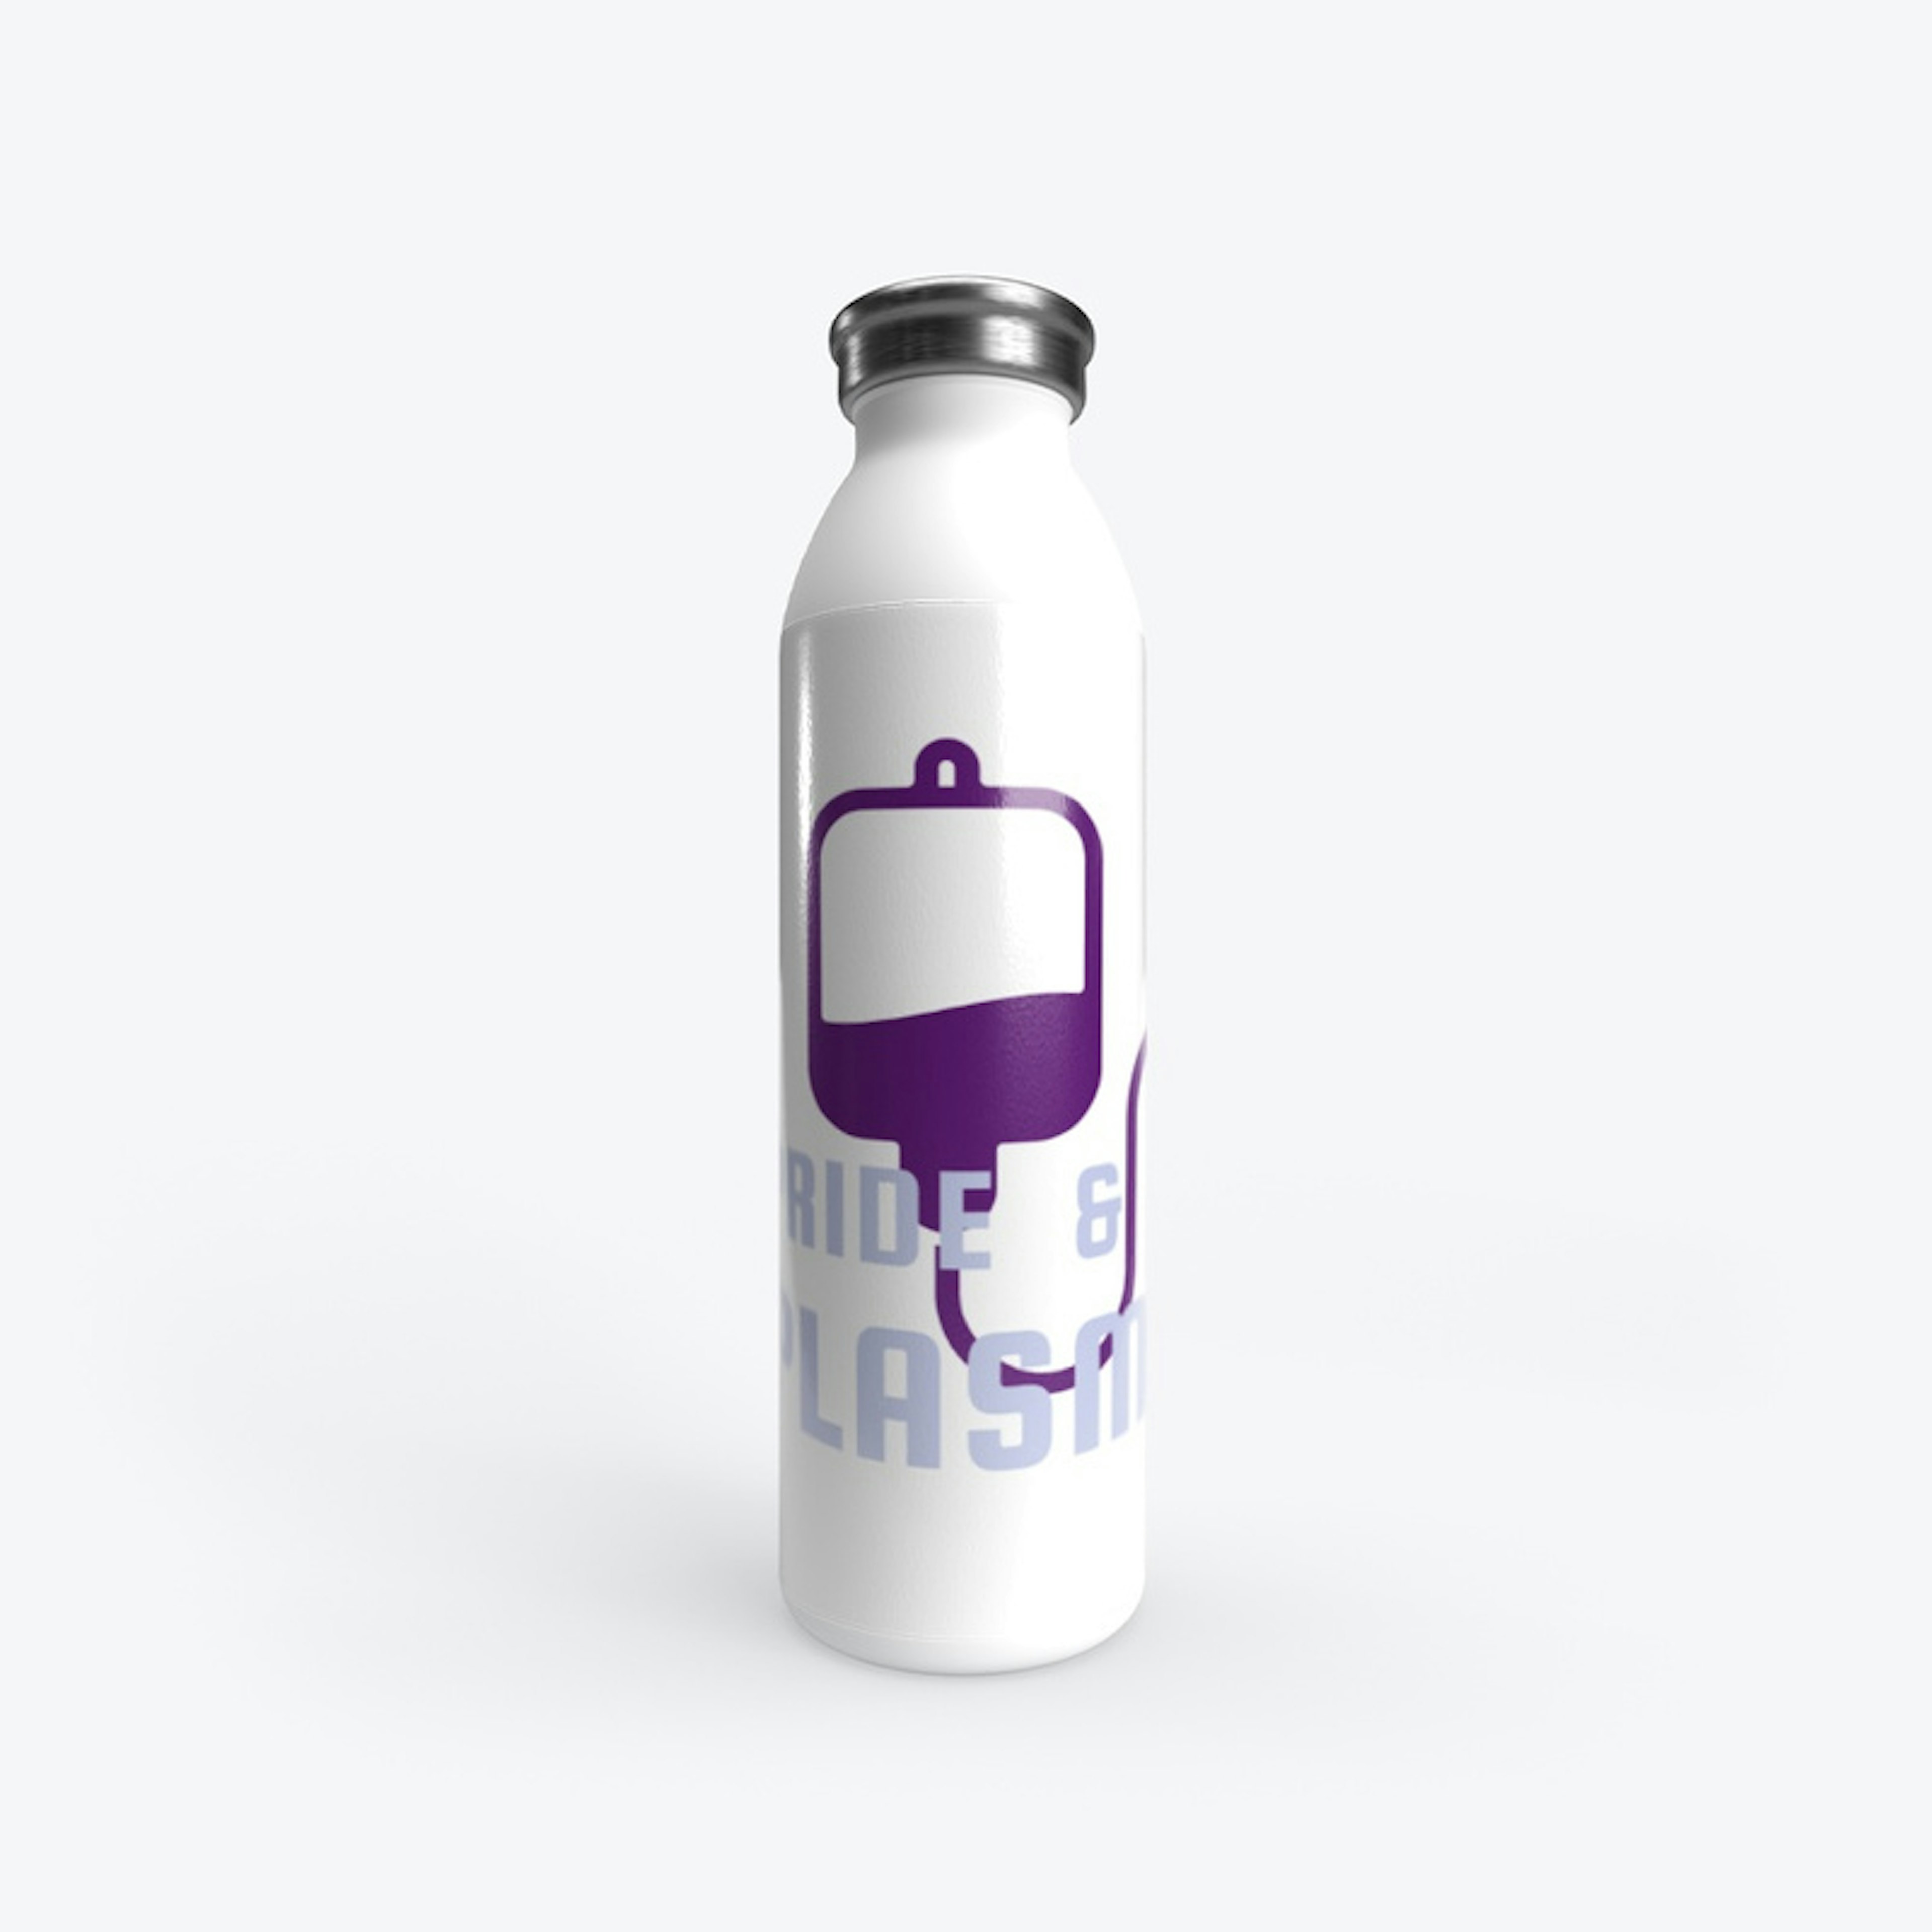 Purple Pride & Plasma logo drinkware